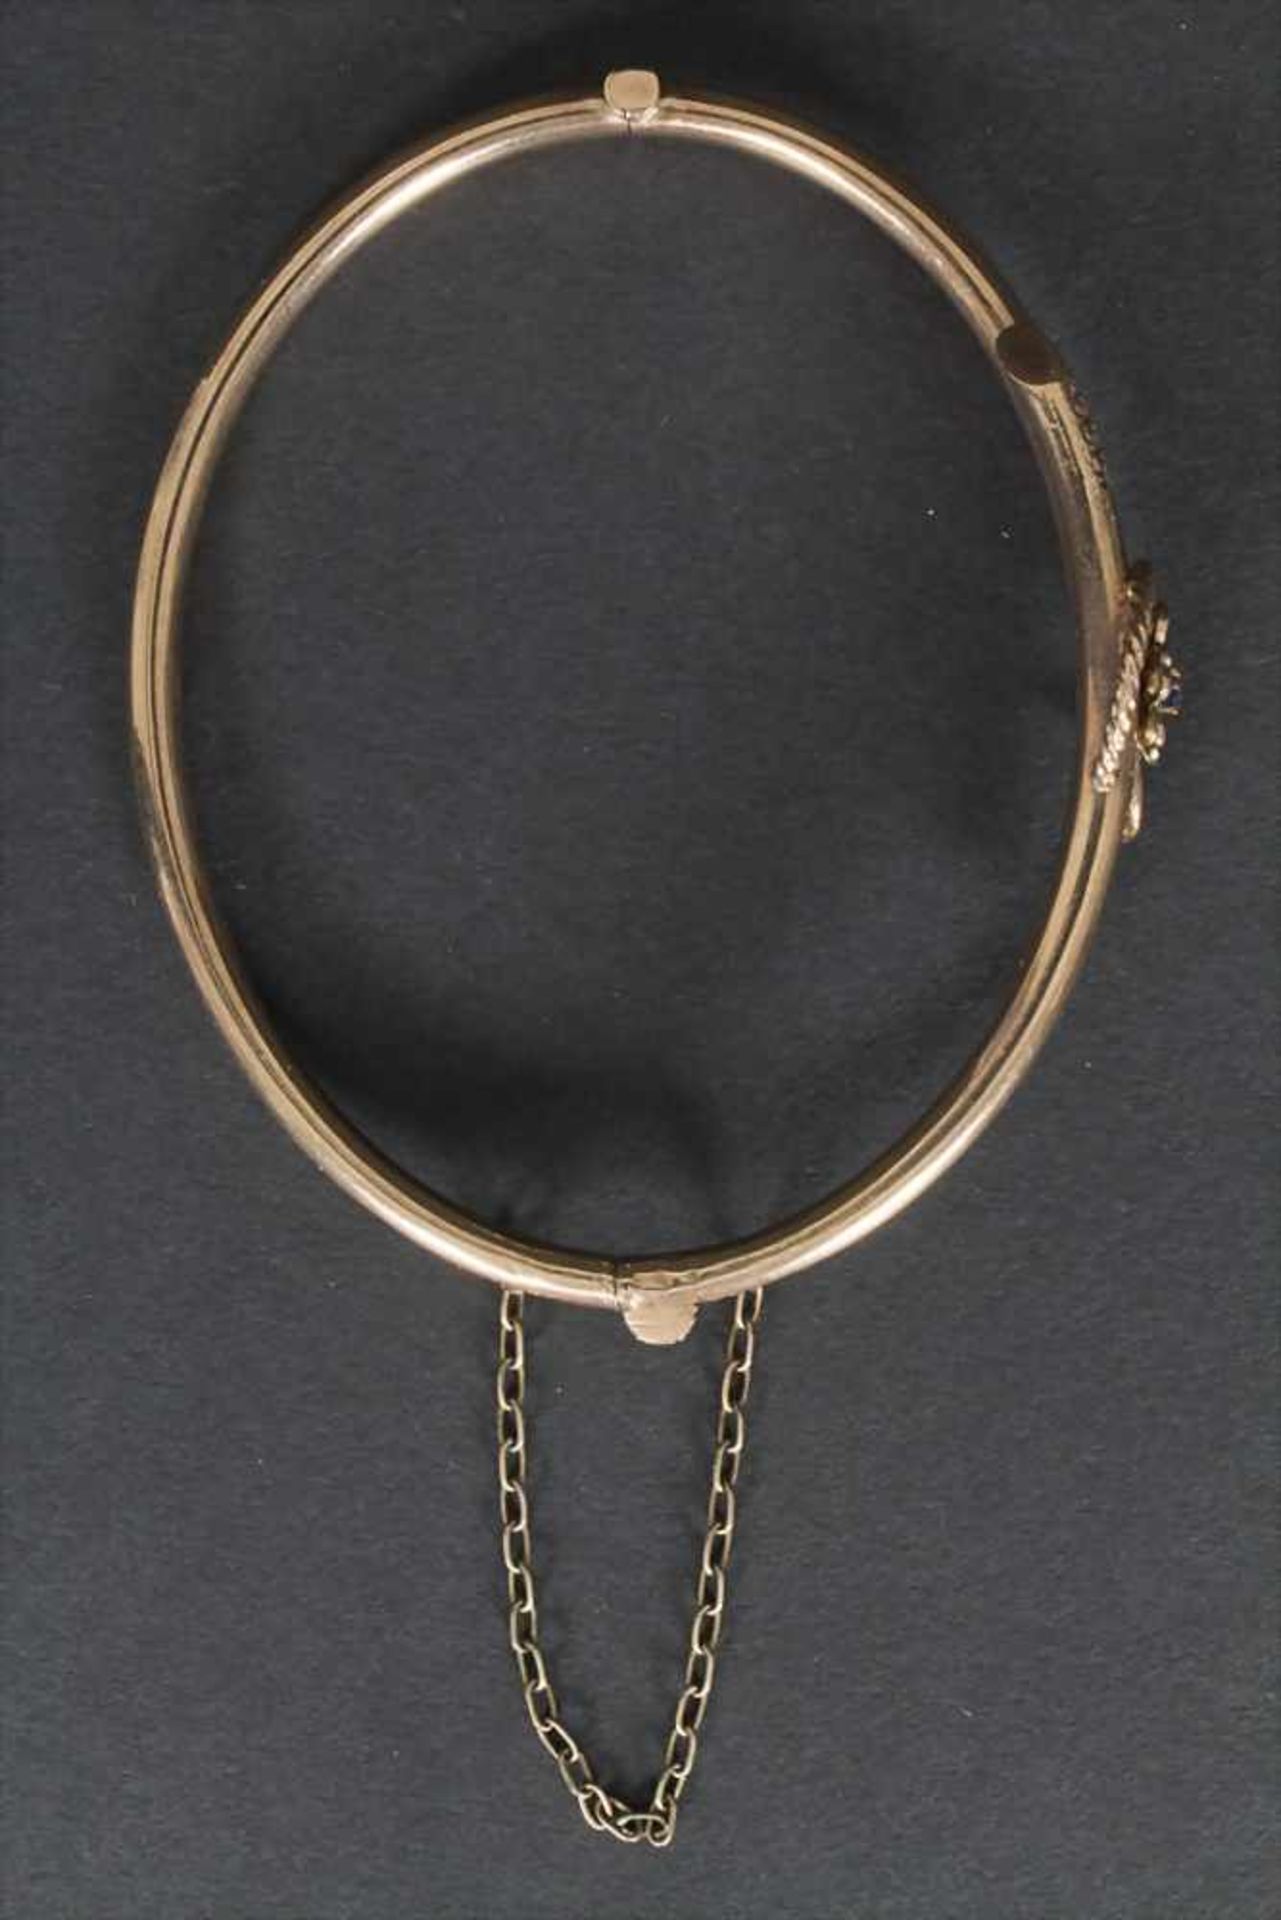 Armreif / A bracelet, 19 Jh.Material: 8 kt 333/000 Gold, FlußperlenMaße: D. 6,7 cm, Gewicht: 6,7 g, - Bild 5 aus 5